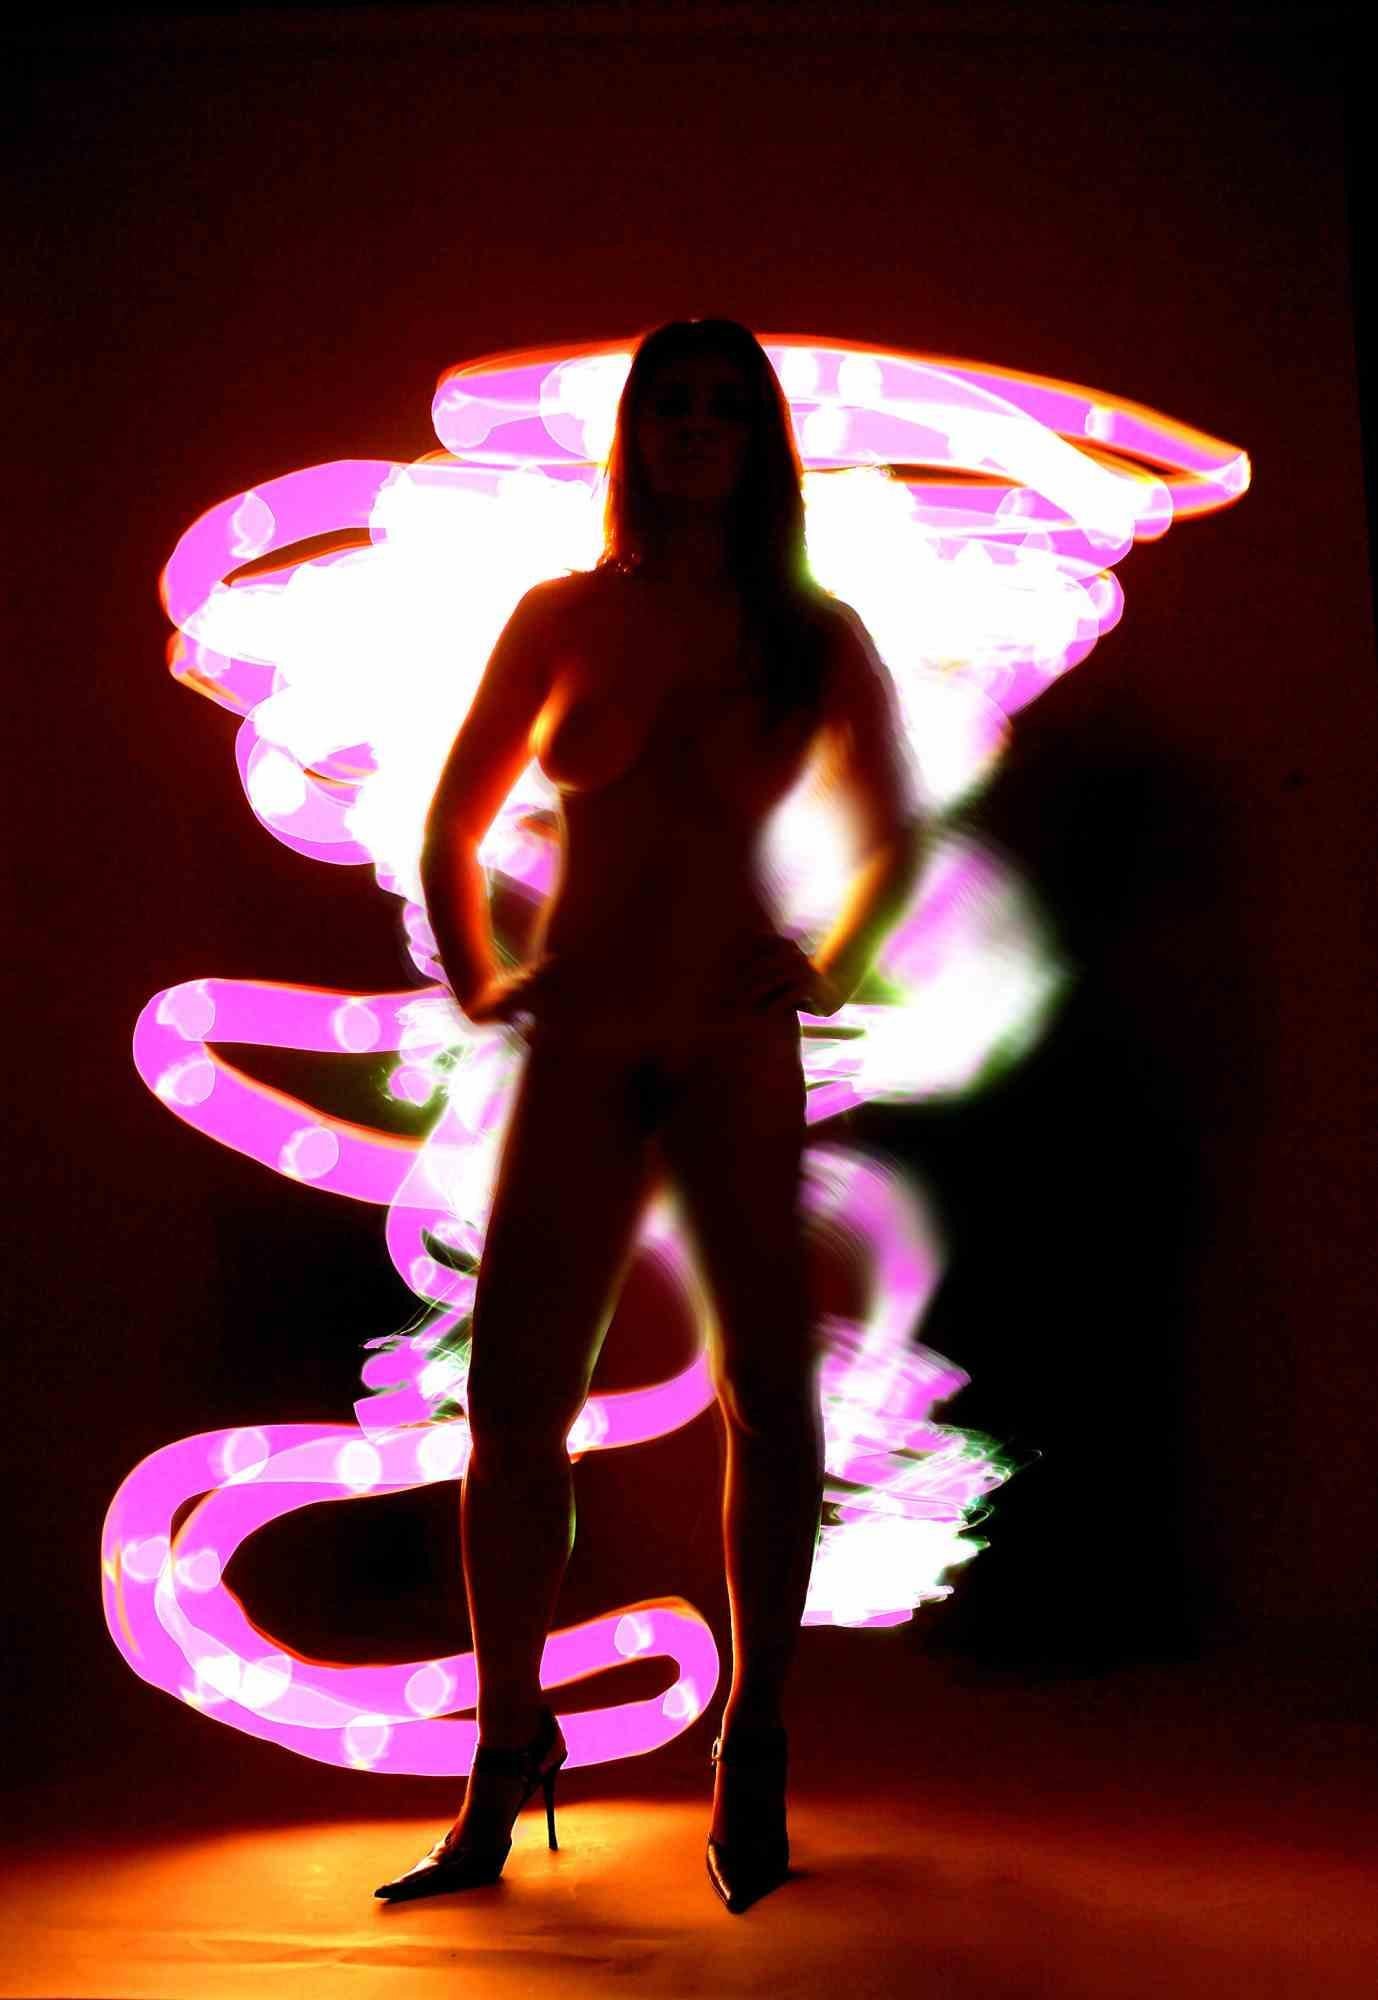 Technique de light painting, réalisée dans un studio photographique complètement sombre, où le photographe "peint" manuellement à la torche.  avec des lumières de différentes couleurs, les sujets et le fond. Appareil photo numérique, impression